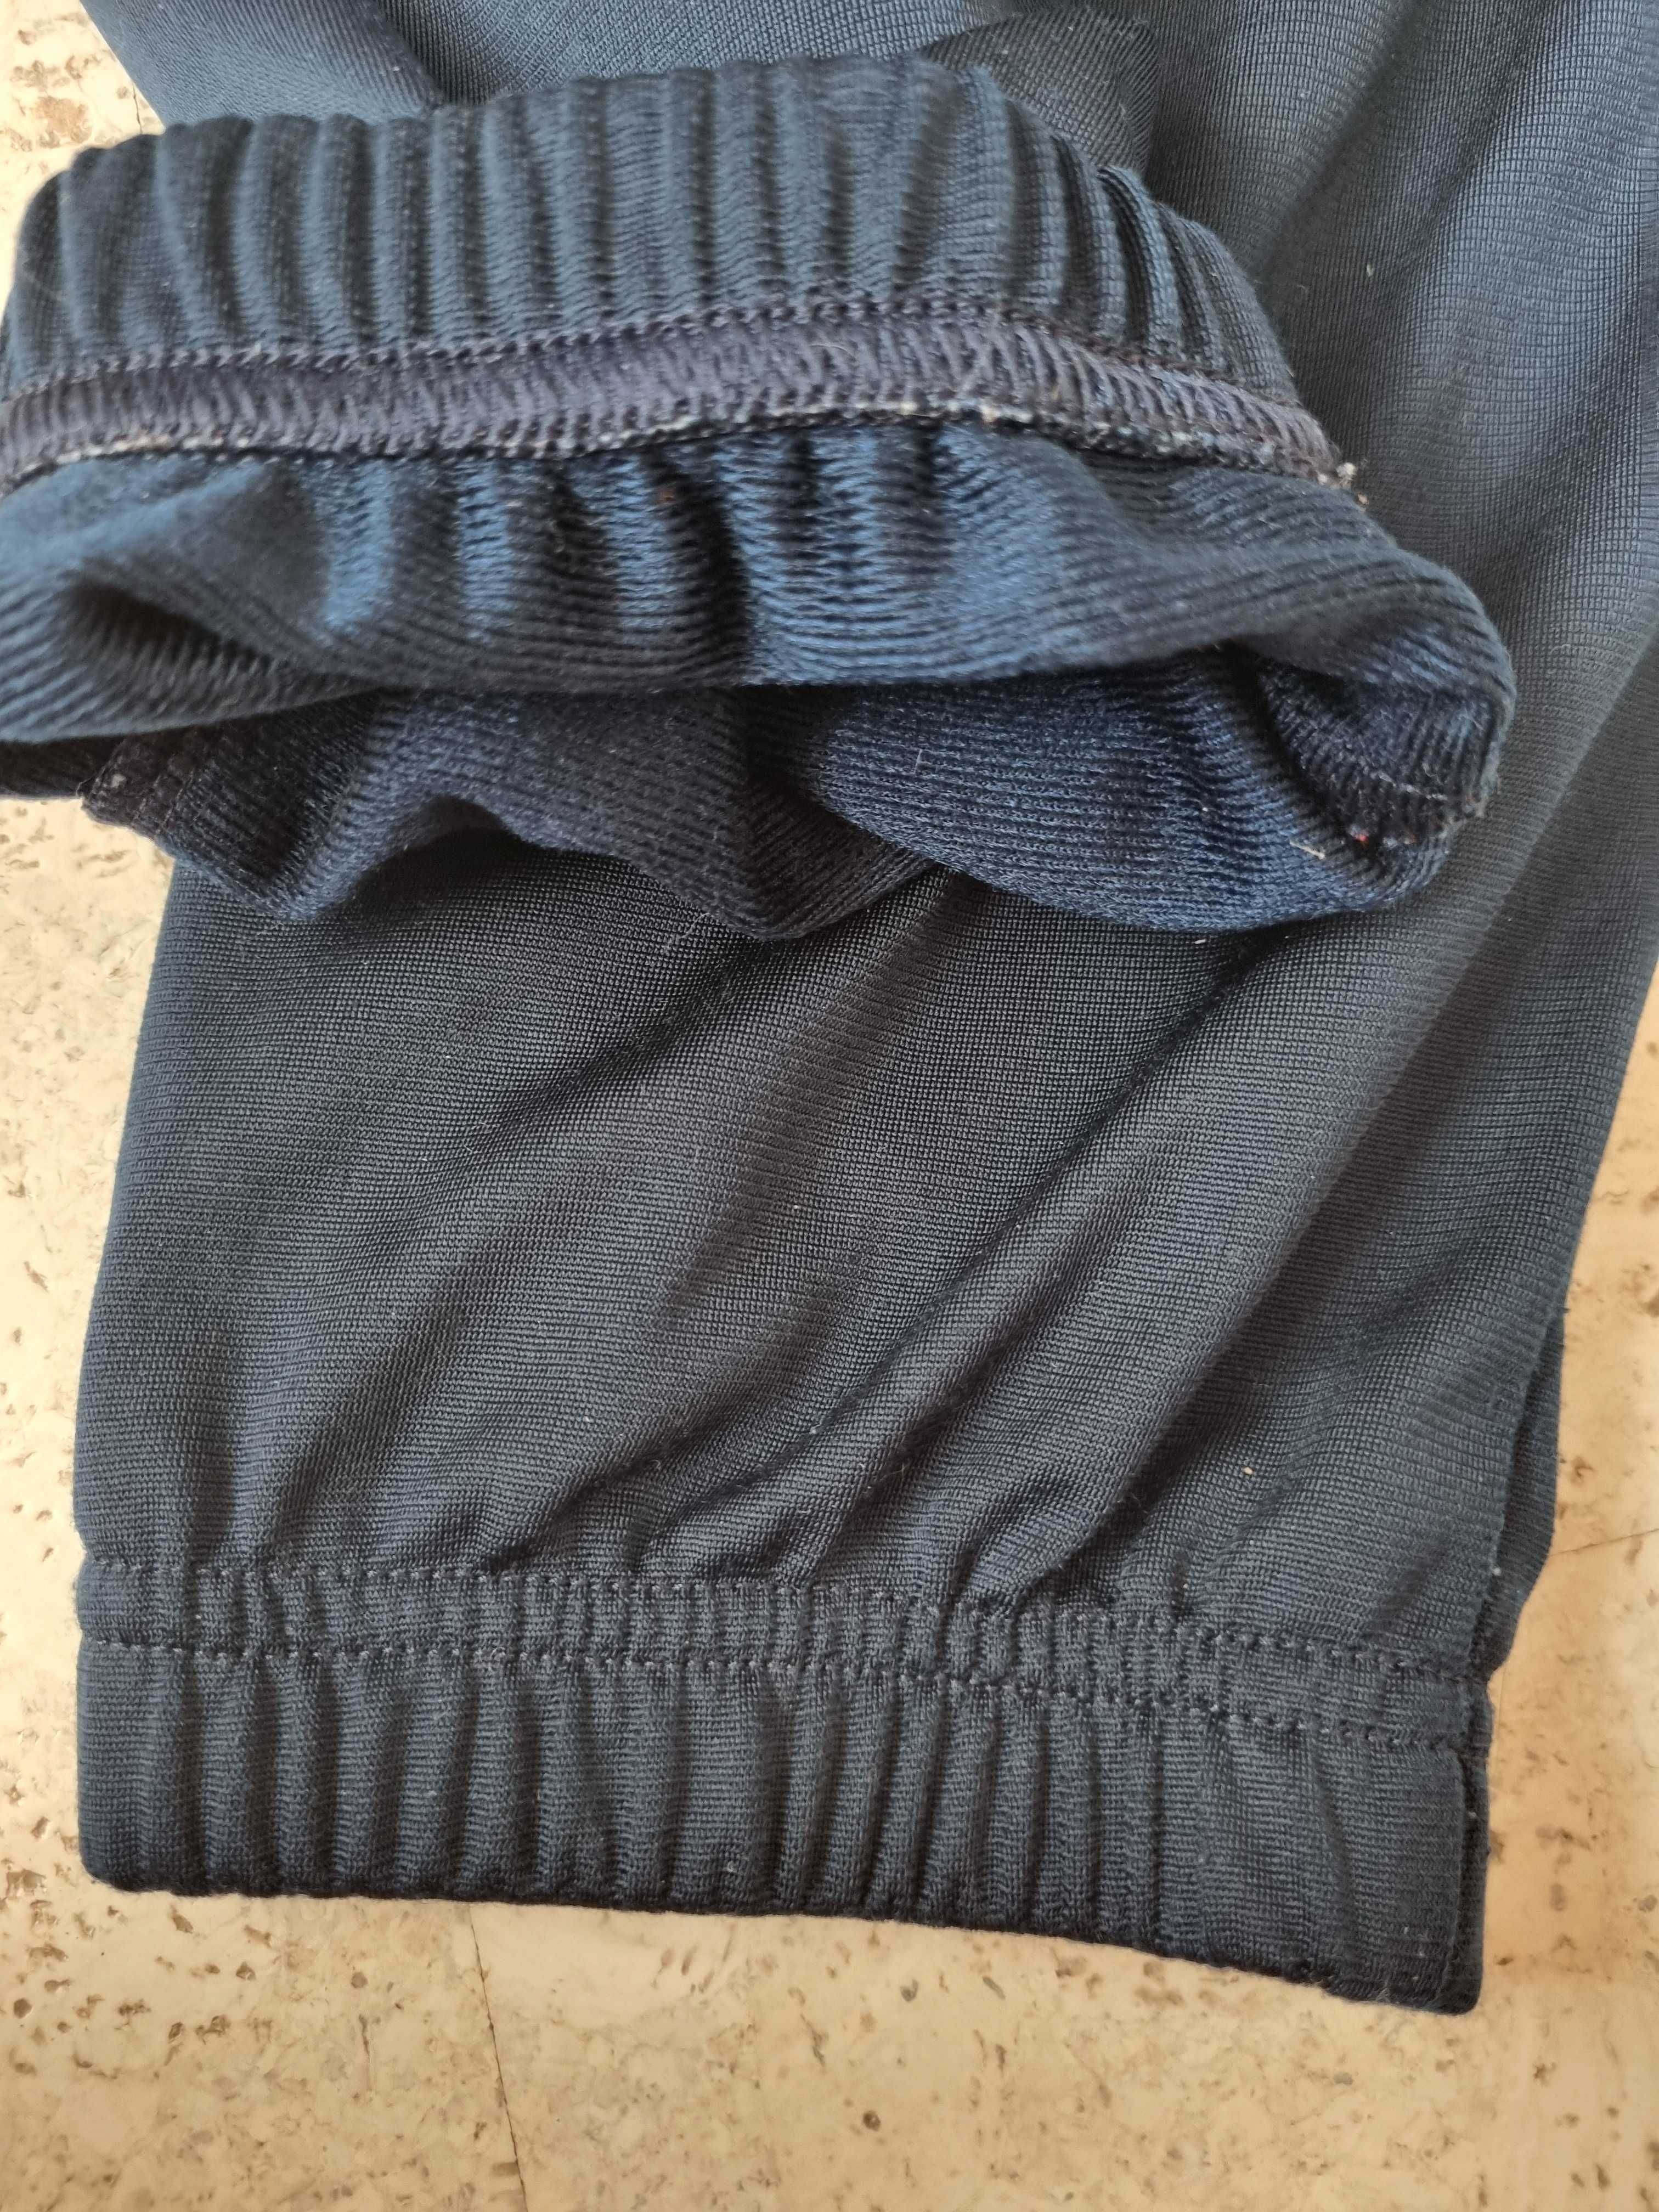 Спортивные штаны ф-мы Adidas р. 140 -146, синие, состояние новых